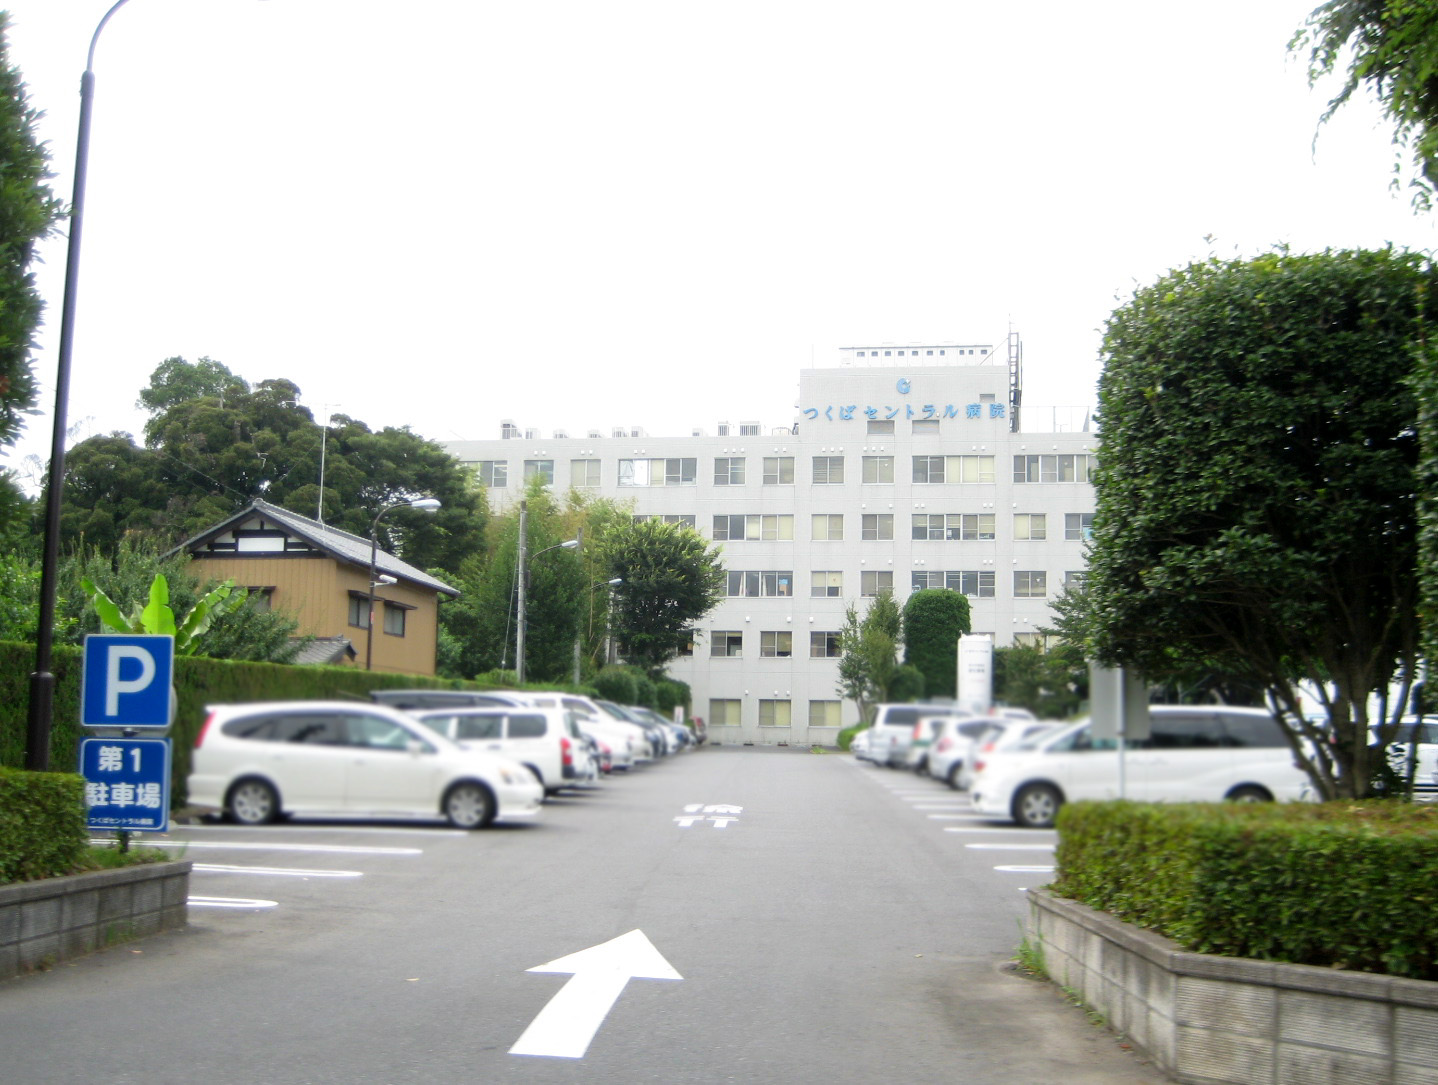 Hospital. 1100m to Tsukuba Central Hospital (Hospital)